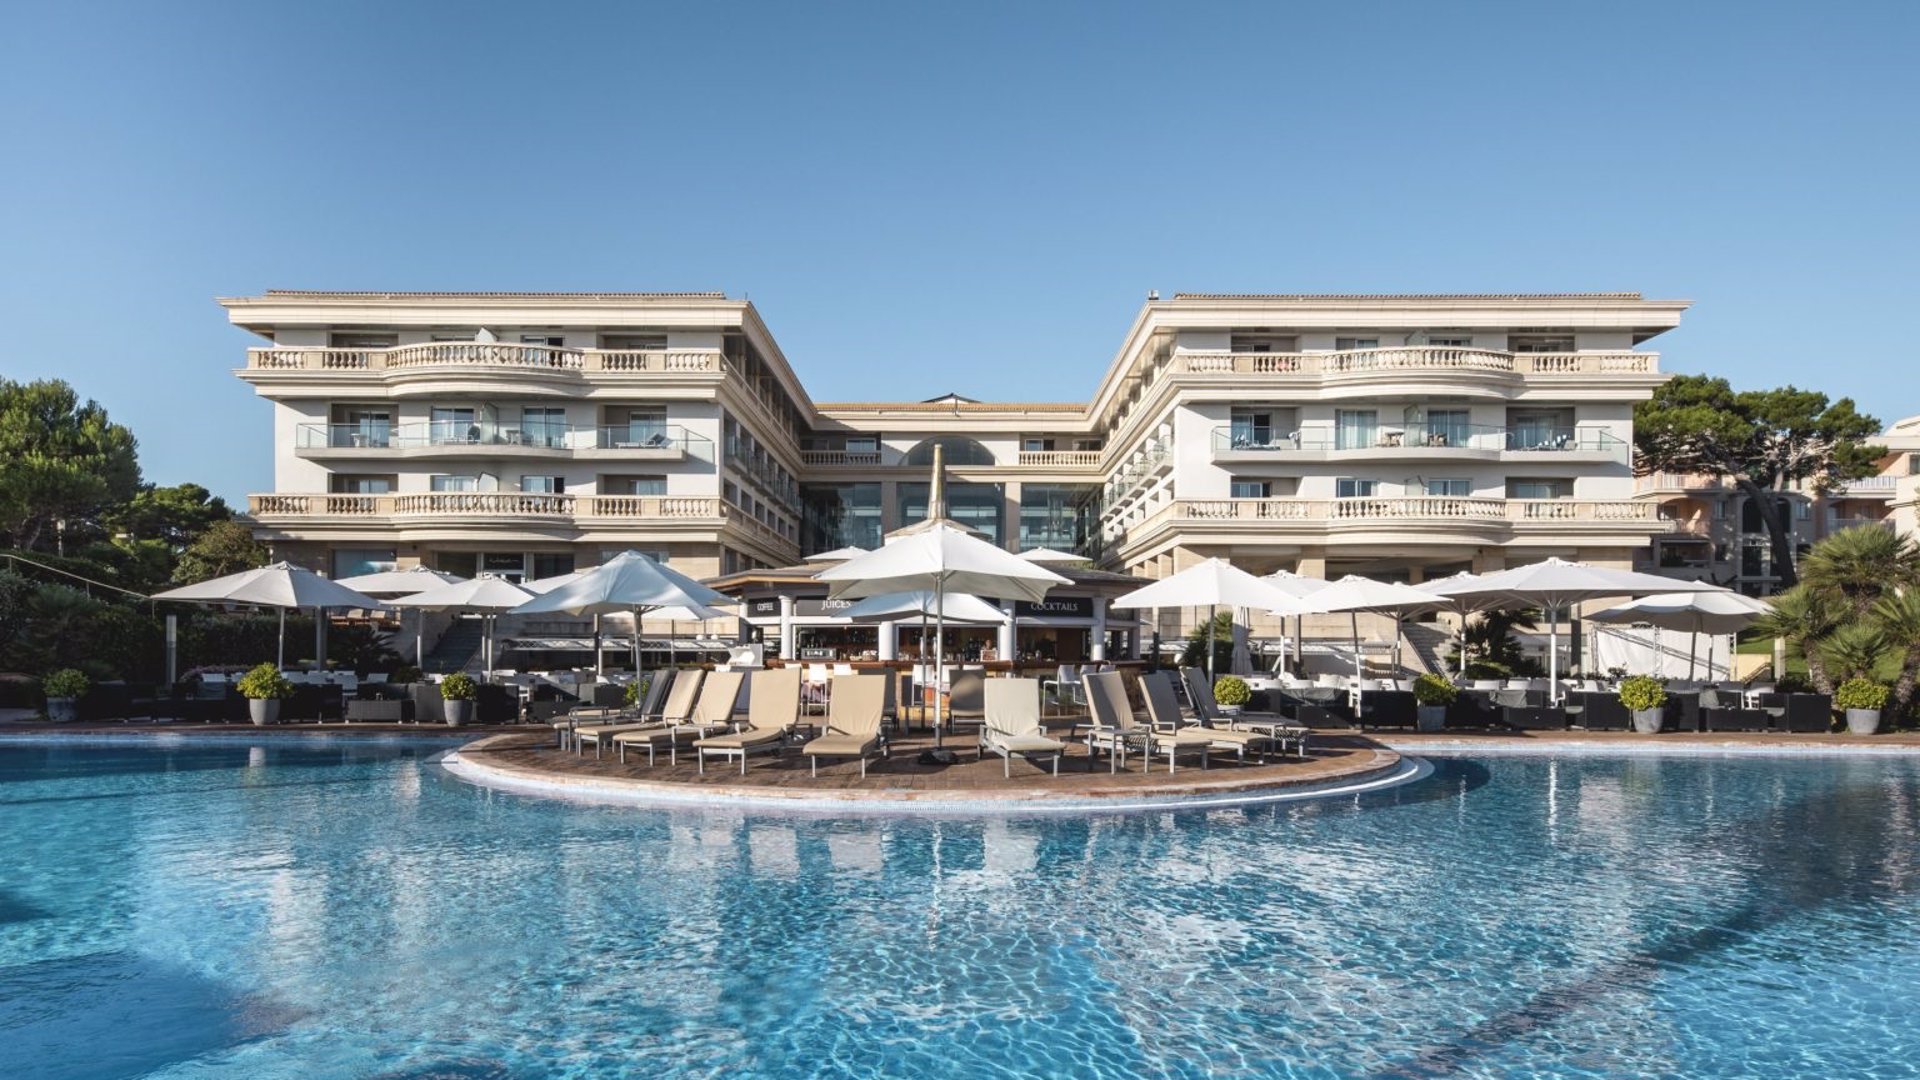 Stoneweg cierra la compra a Globalia de dos hoteles en Mallorca y Tenerife por 83 millones - STONEWEG